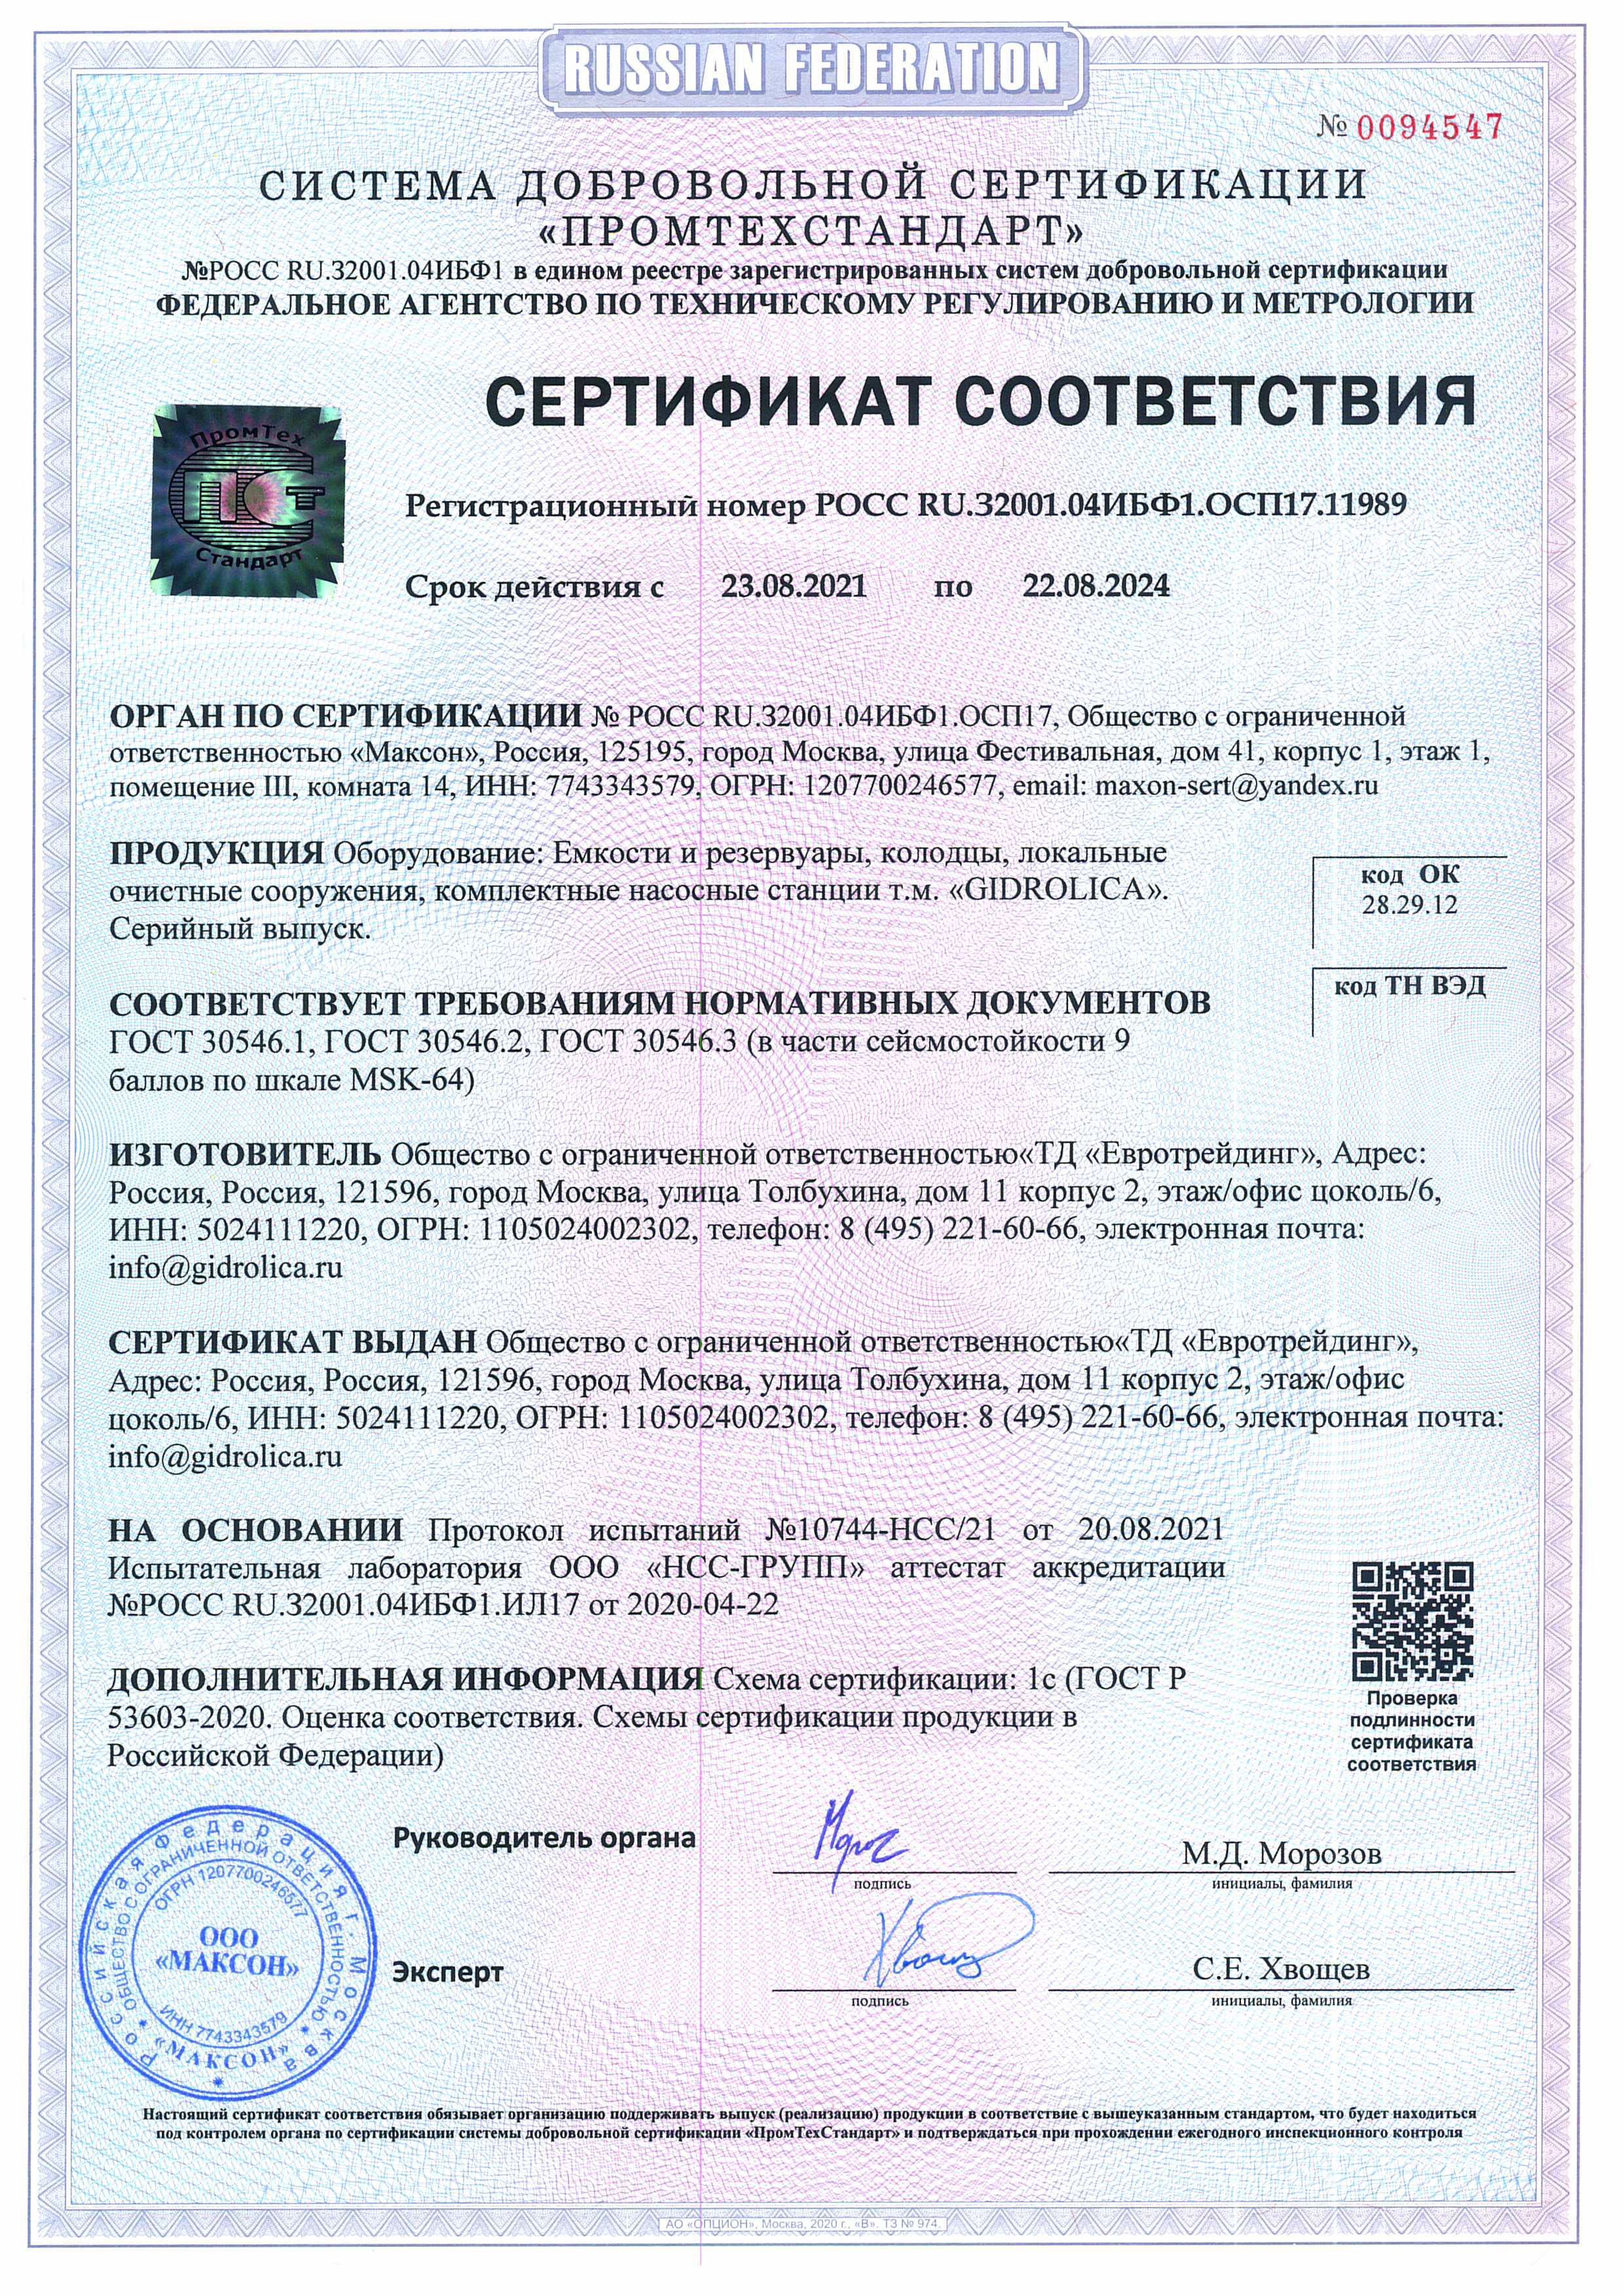 Сертификат соответствия 006773 на поликарбонат ТМ Borrex